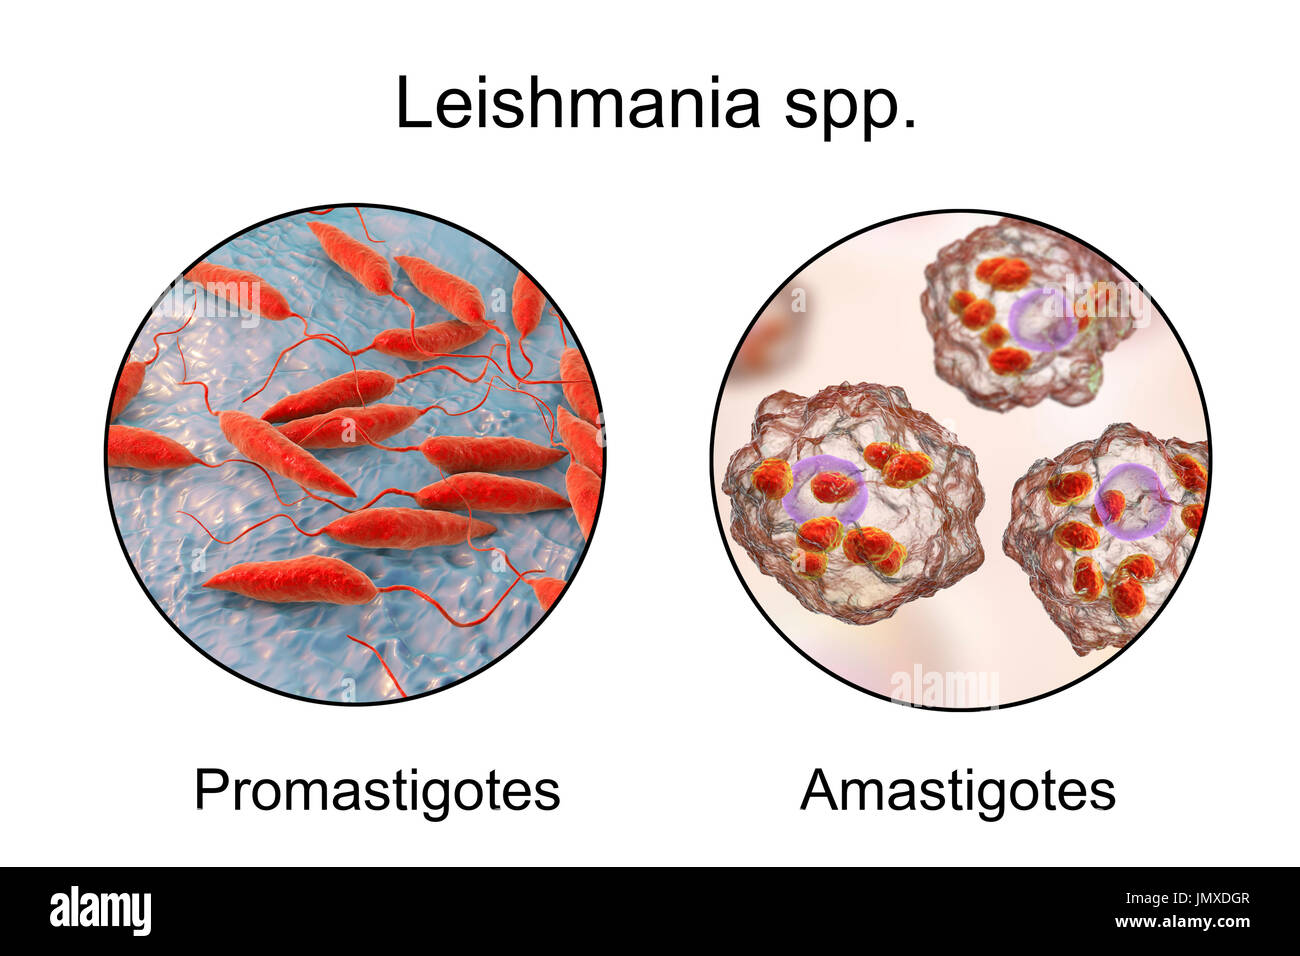 E Promastigotes amastigotes di parassiti Leishmania all'interno di macrofagi, illustrazione. Leishmania sp. causano la leishmaniosi, malattia tropicale trasmessa da punture di sabbia infetti-mosche. Questi sono i flagellato forma promastigote del parassita. Negli esseri umani il flagellato stadio promastigotes infetta i macrofagi e si trasforma in amastigote non-stadio flagellato. Ci sono due forme di leishmaniosi. Il primo, leishmaniosi cutanea, colpisce la pelle dando luogo ad un'ulcera al sito del morso. Questo principalmente guarisce naturalmente, sebbene la cicatrizzazione possono verificarsi. Il più grave, Foto Stock